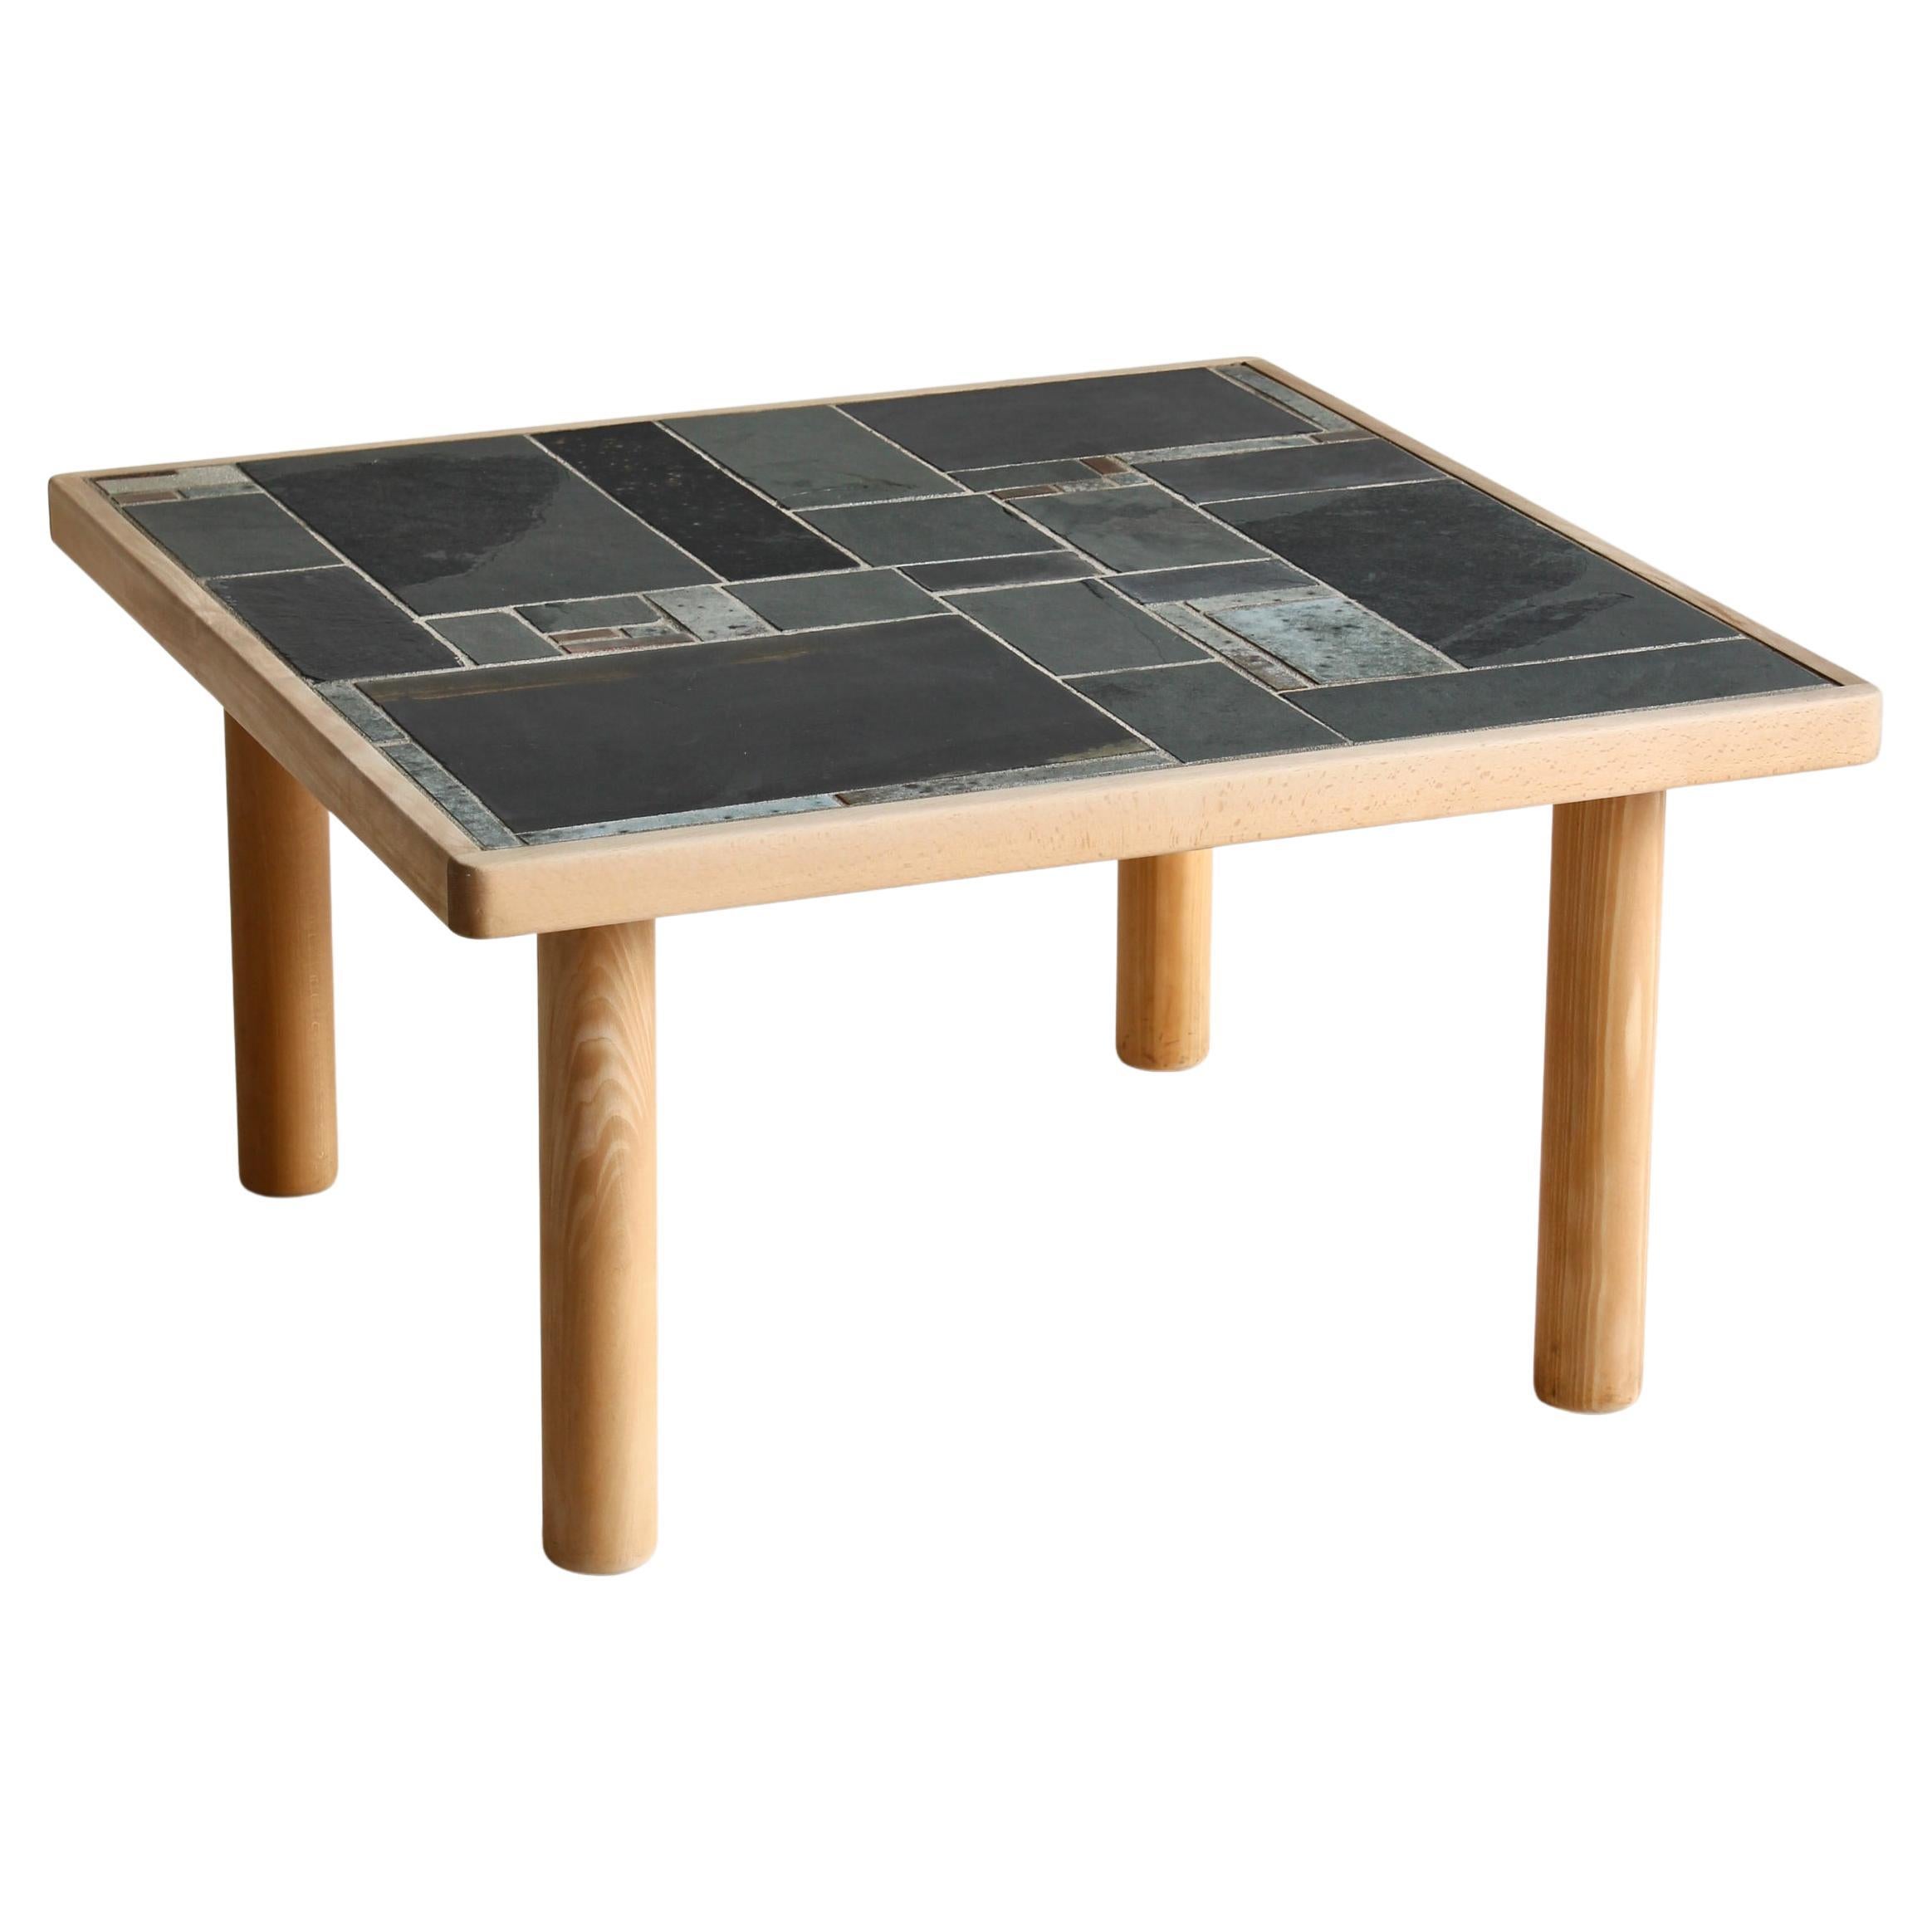 Table basse carrée en bois de hêtre et carreaux de céramique par Sallingboe, Danemark, années 1970